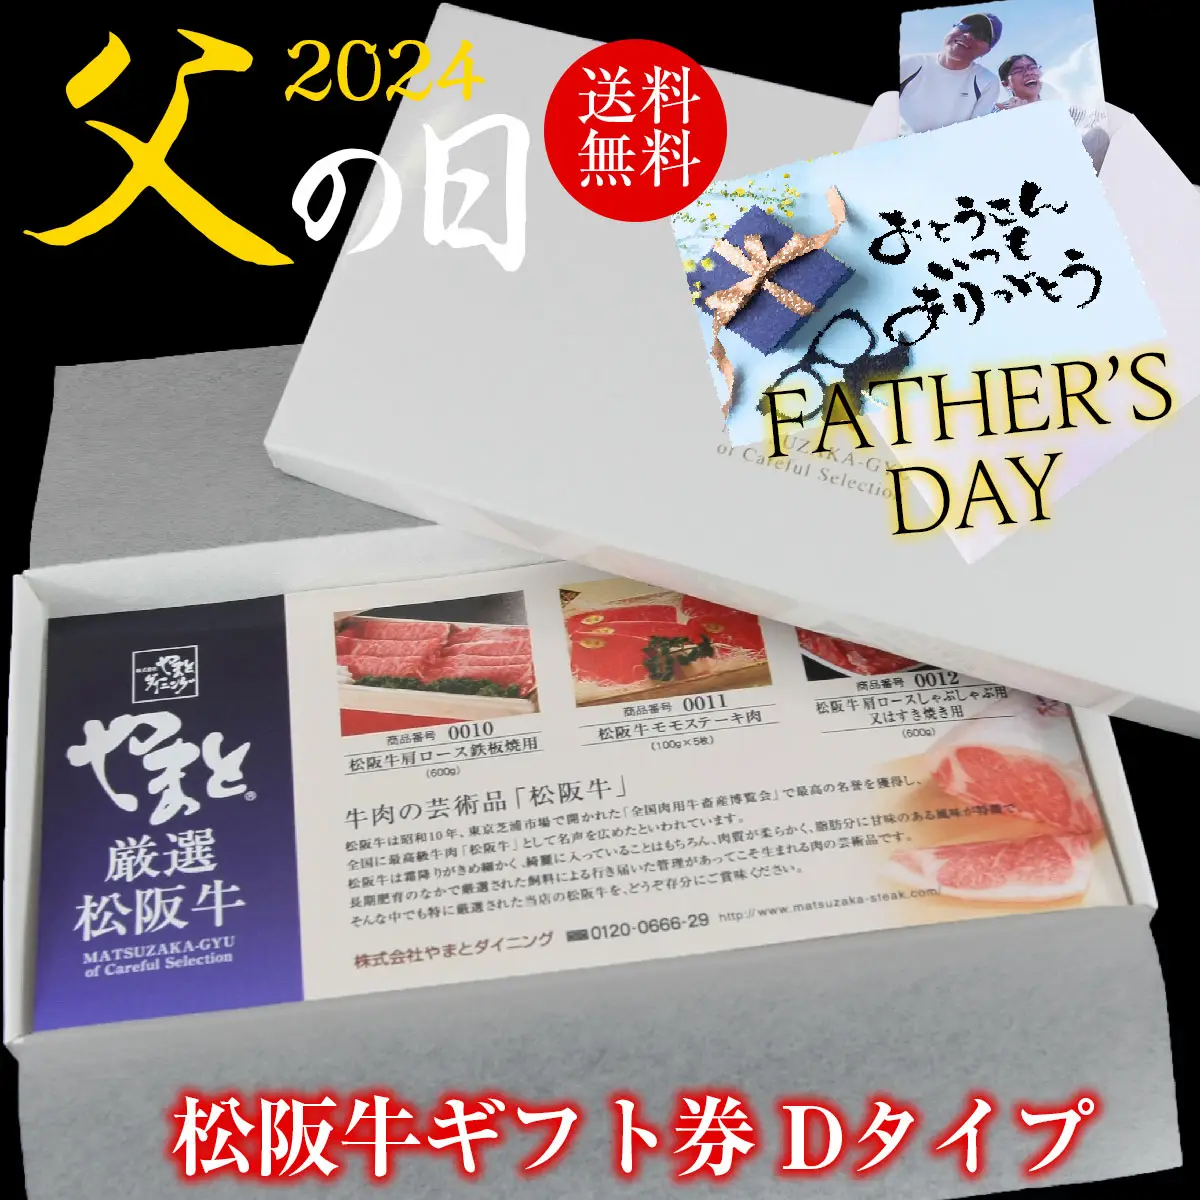 【父の日】松阪牛お肉のギフト券Dタイプ